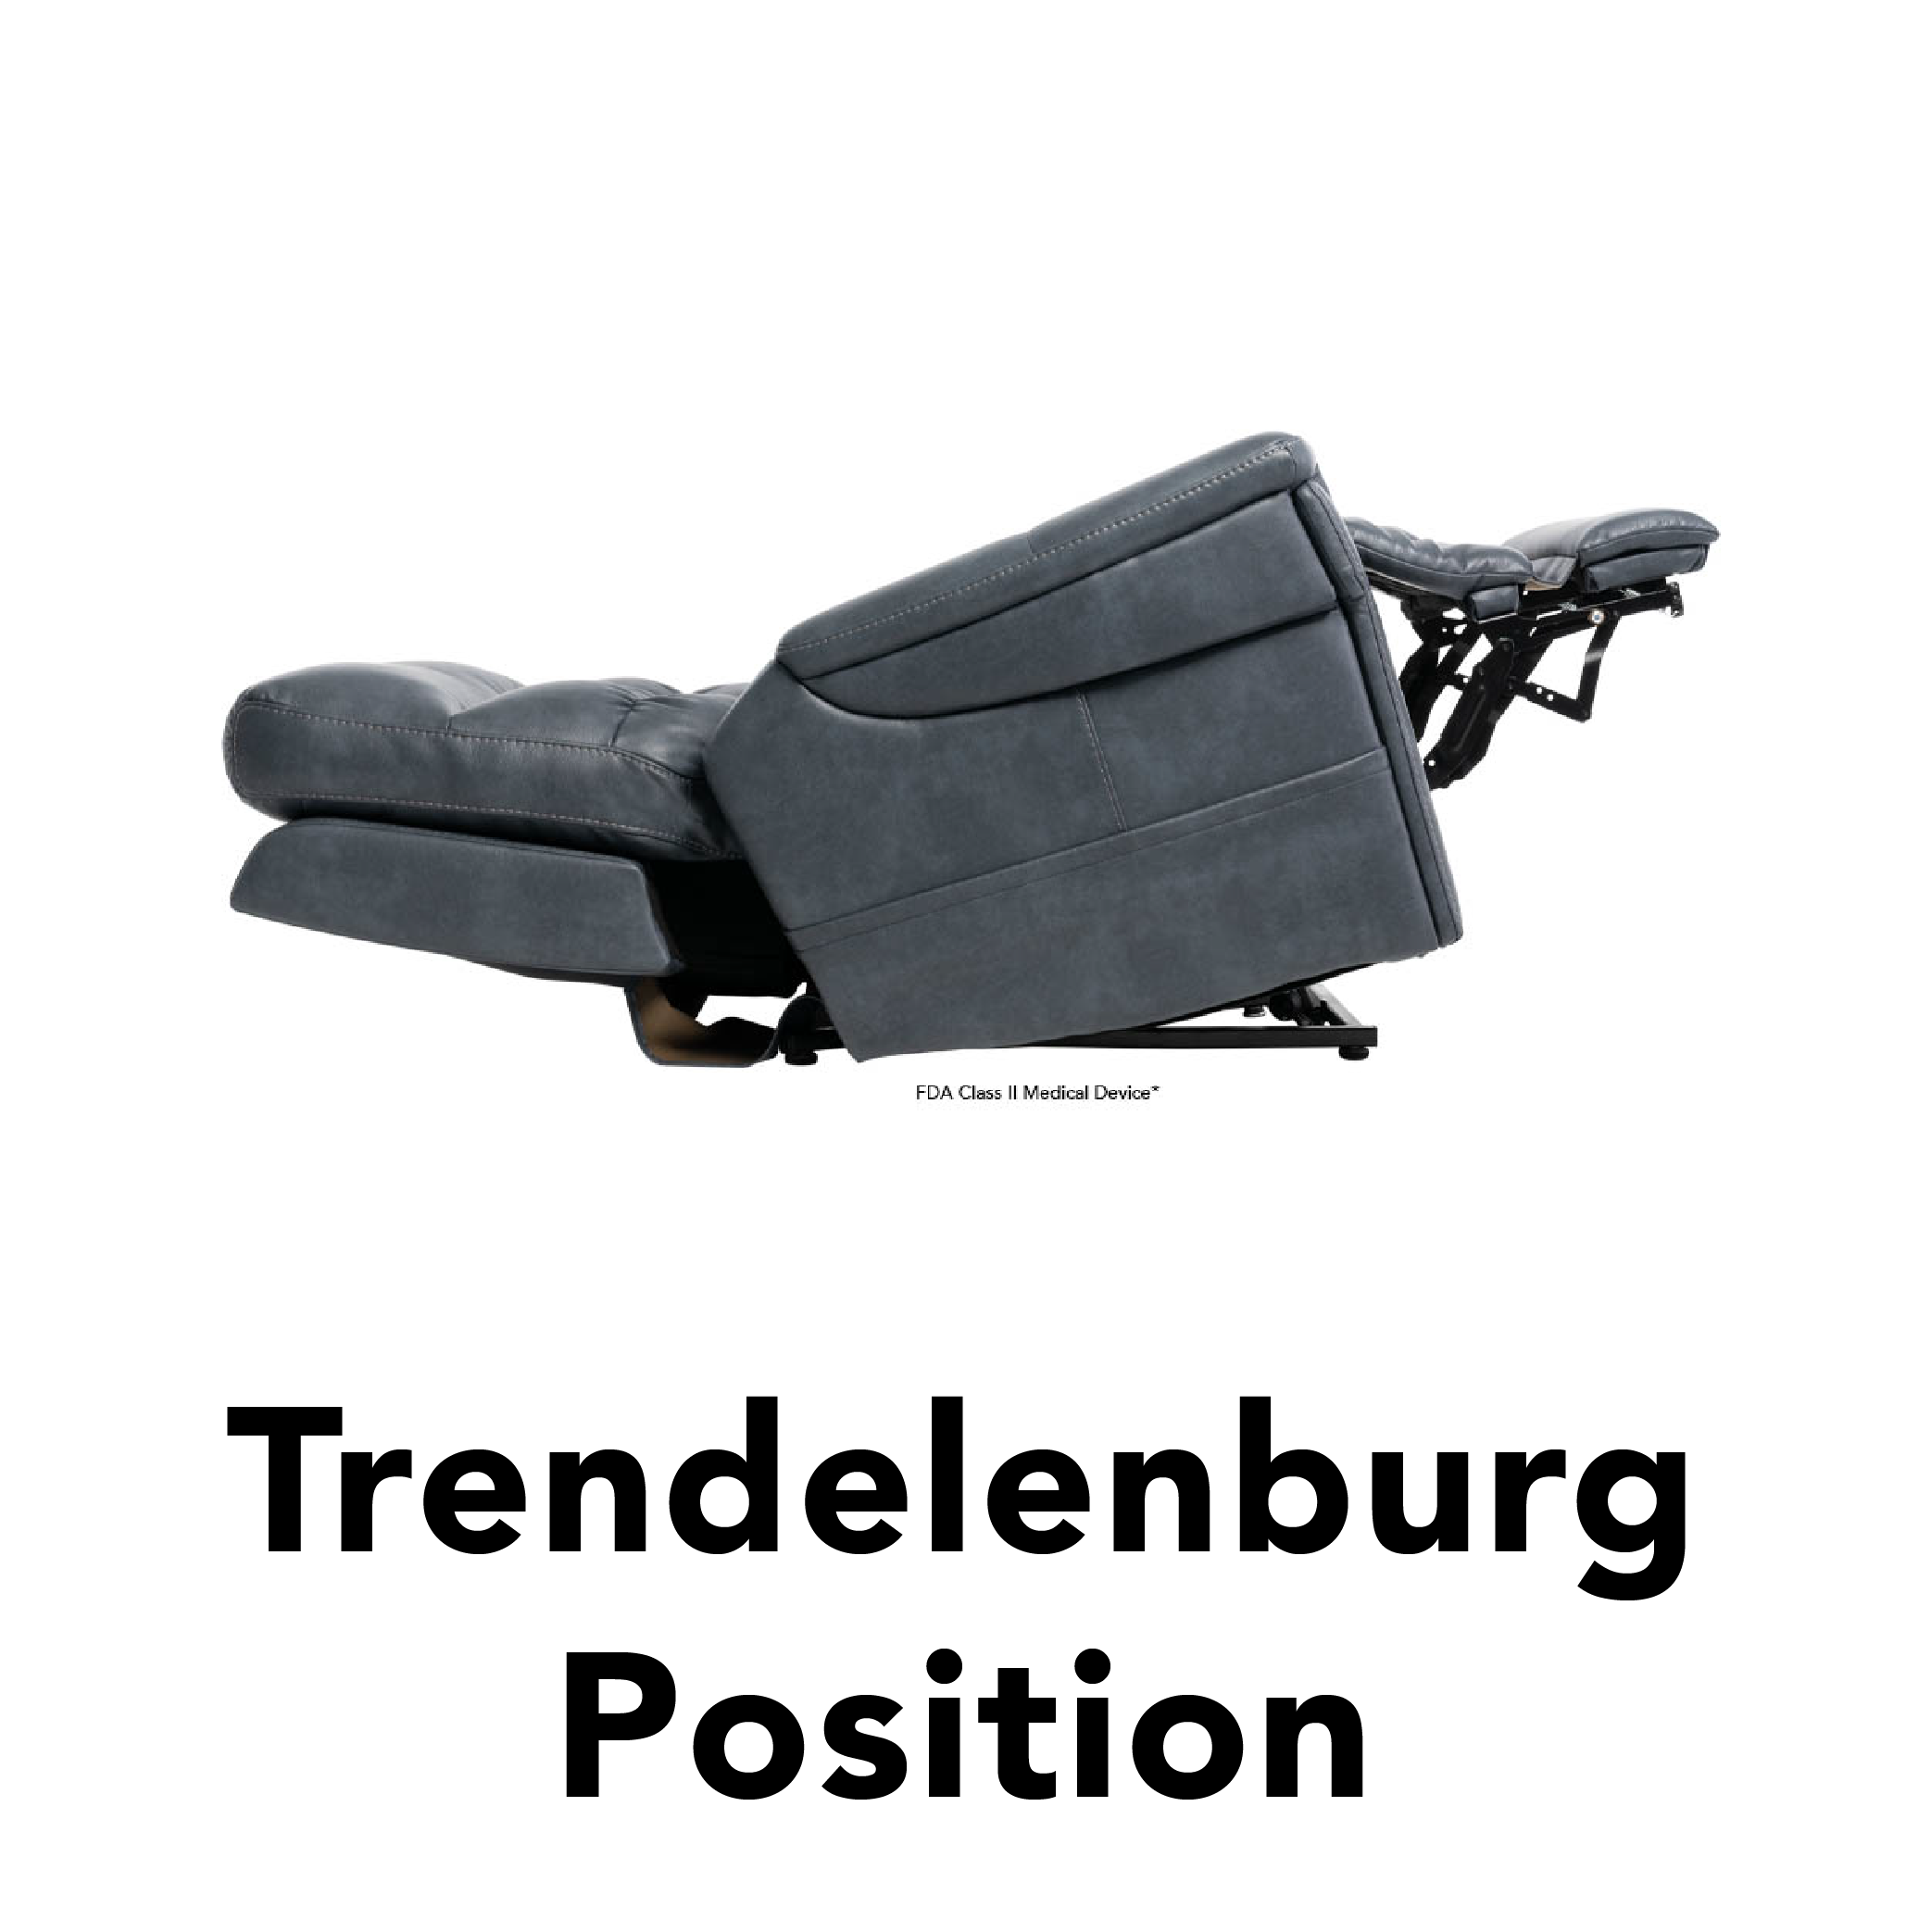 trendelenburg position lift chair